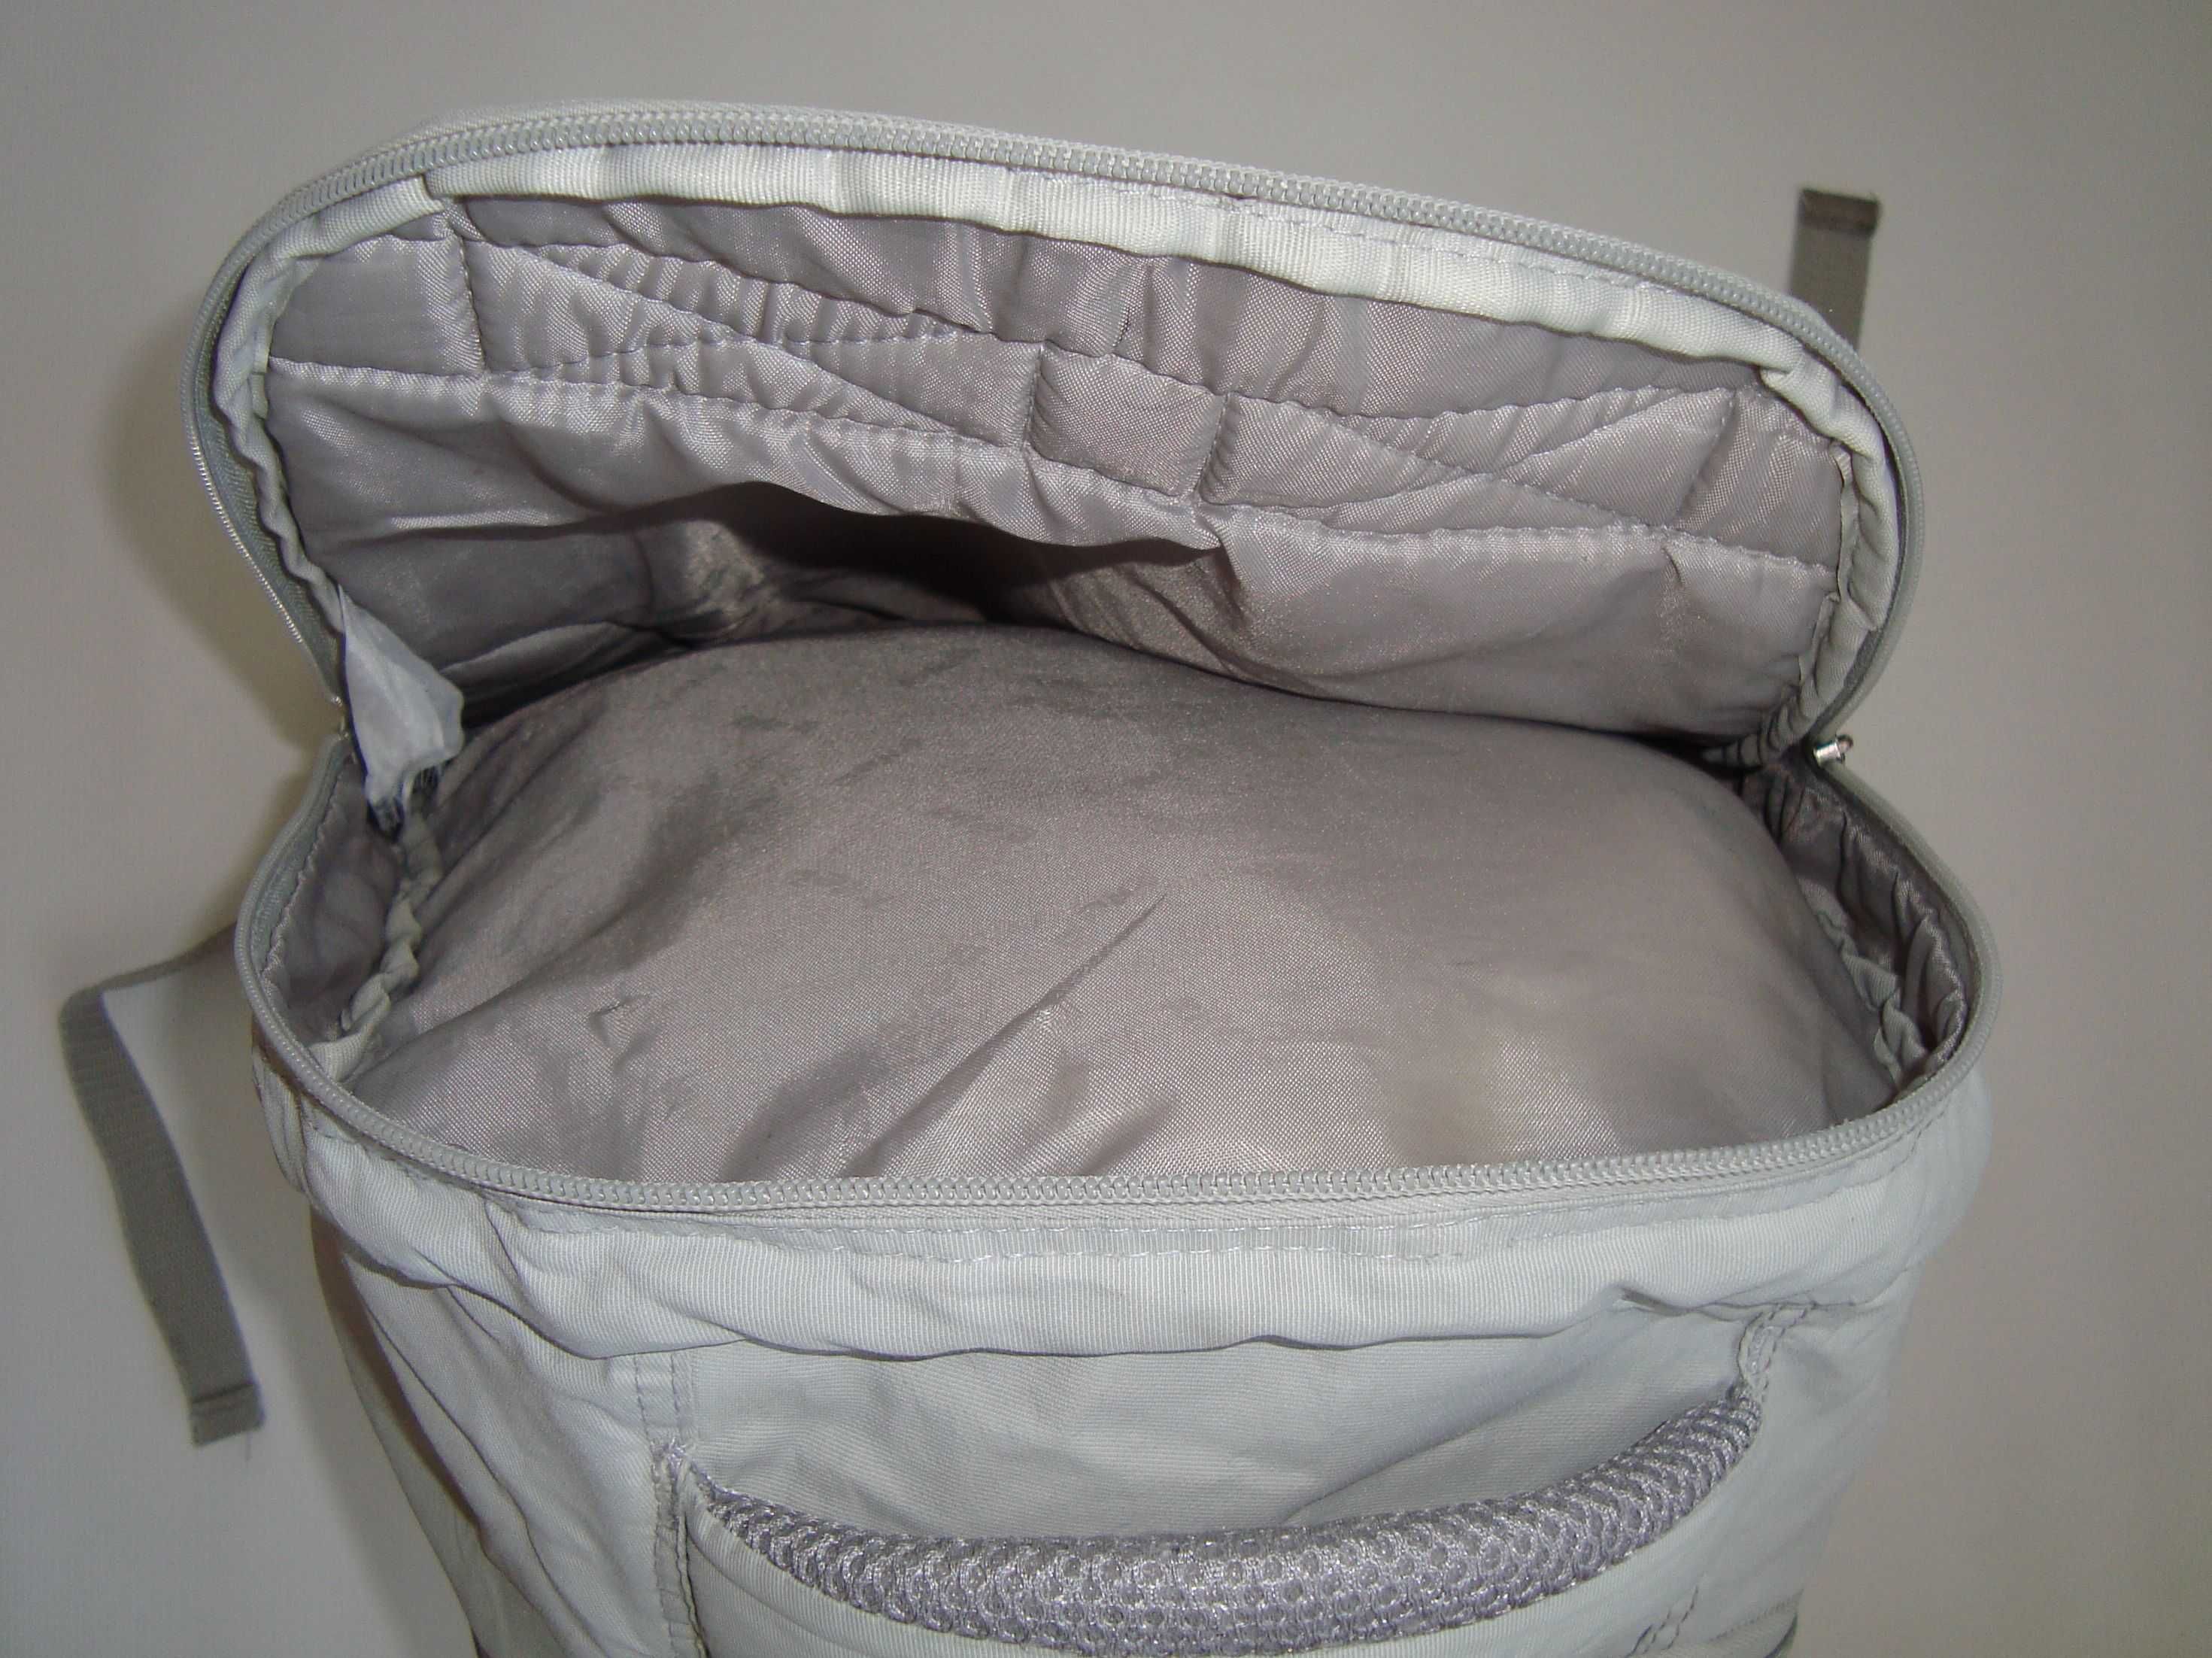 Рюкзак Kite Education Style 43x30x21 см серый, мягкий. Обмін - сам